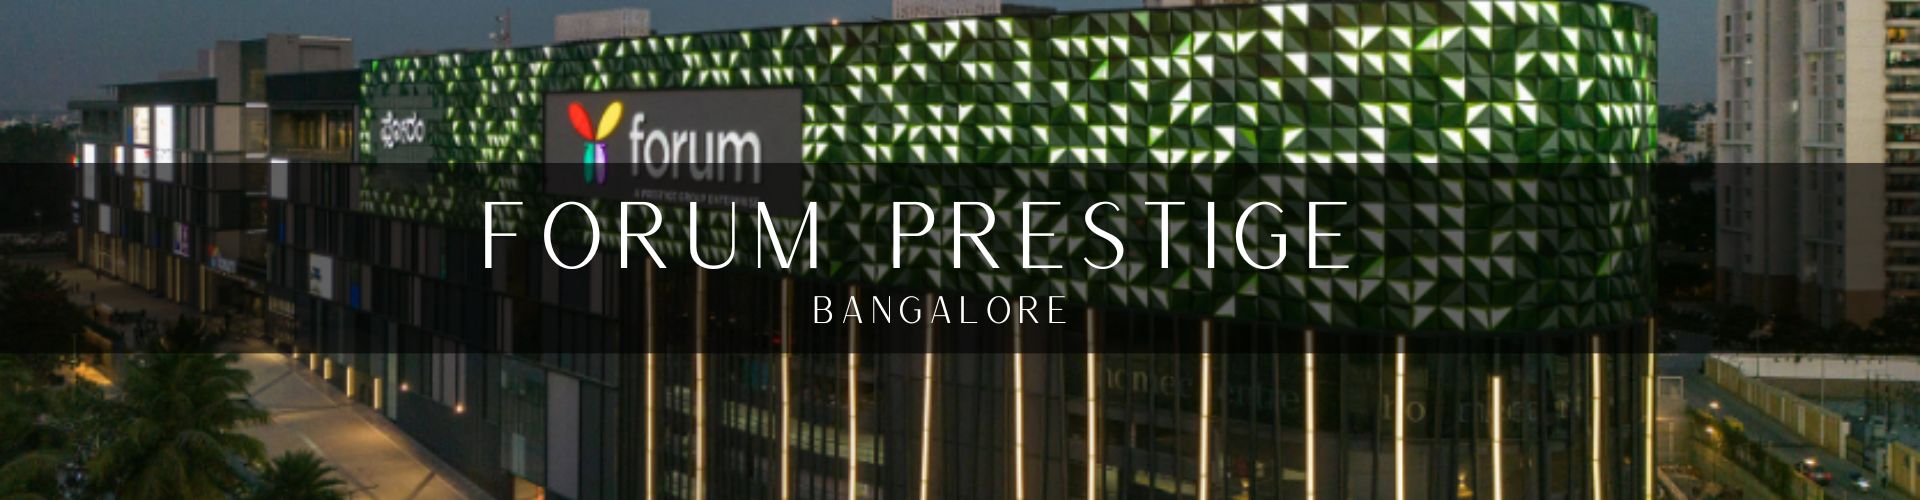 Forum Prestige Project Palasa Bangalore 